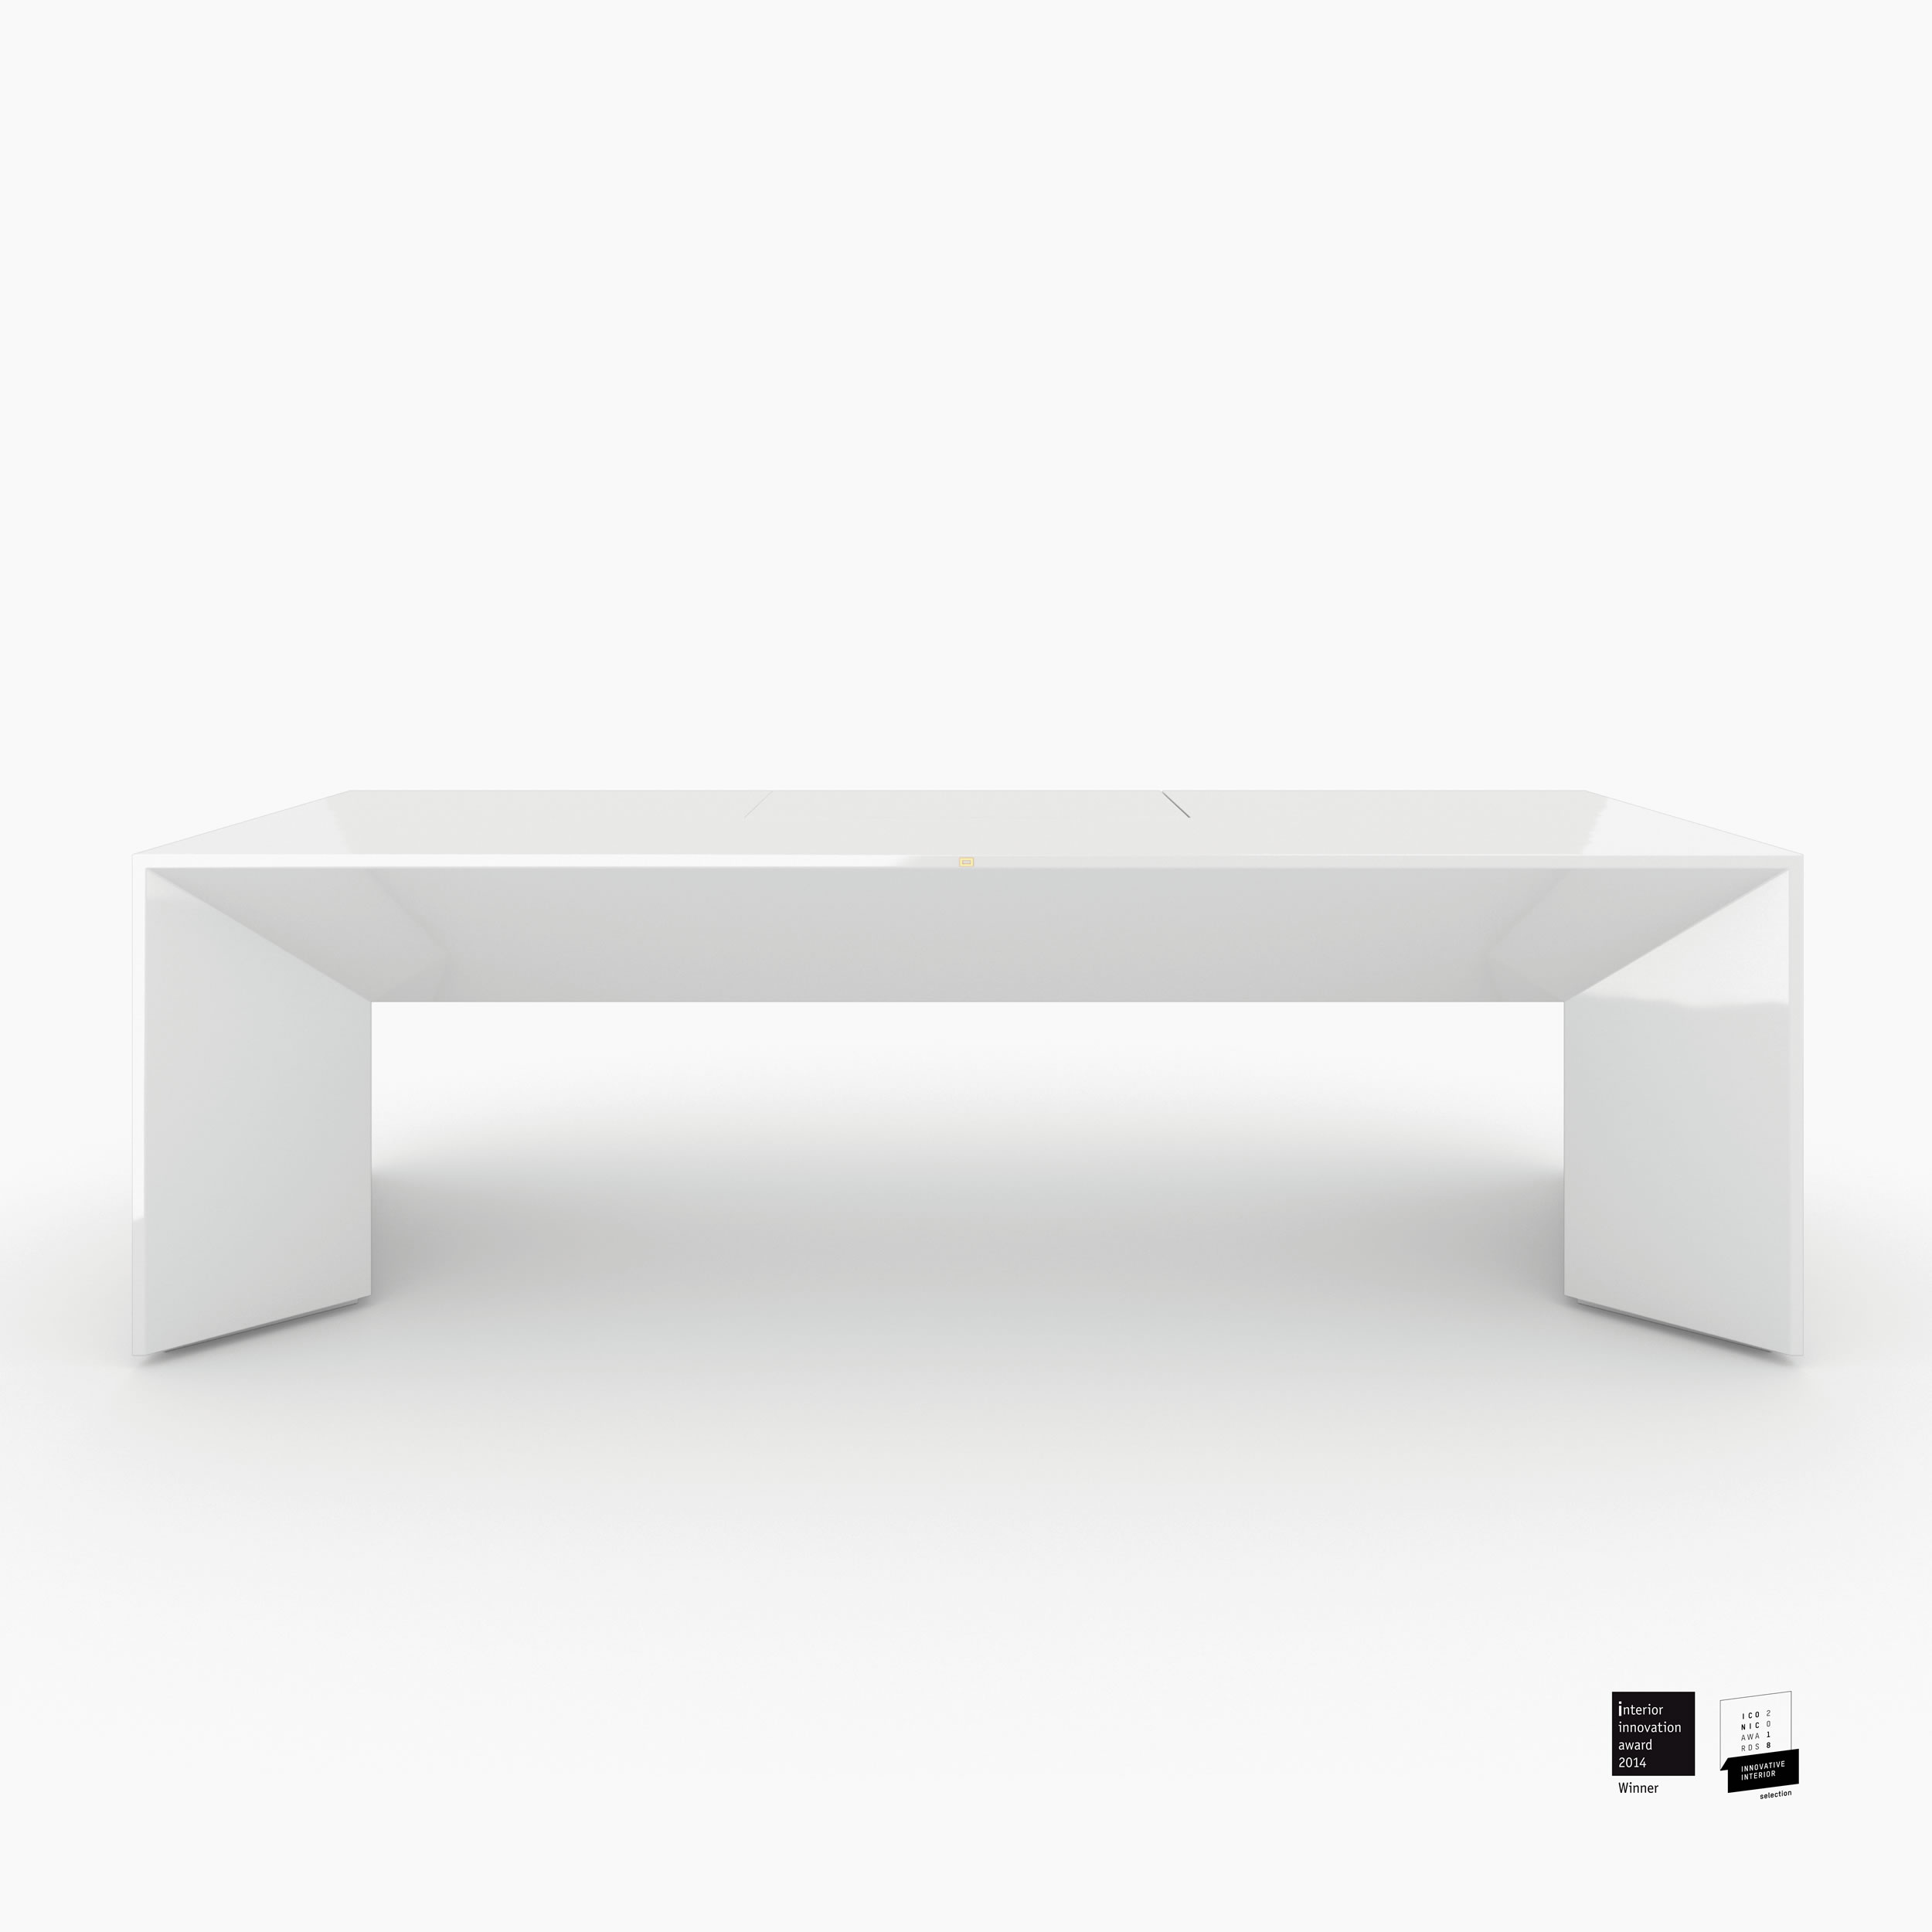 Schreibtischig weiss functional art Chefzimmer minimalist furniture Schreibtische FS 89 FELIX SCHWAKE